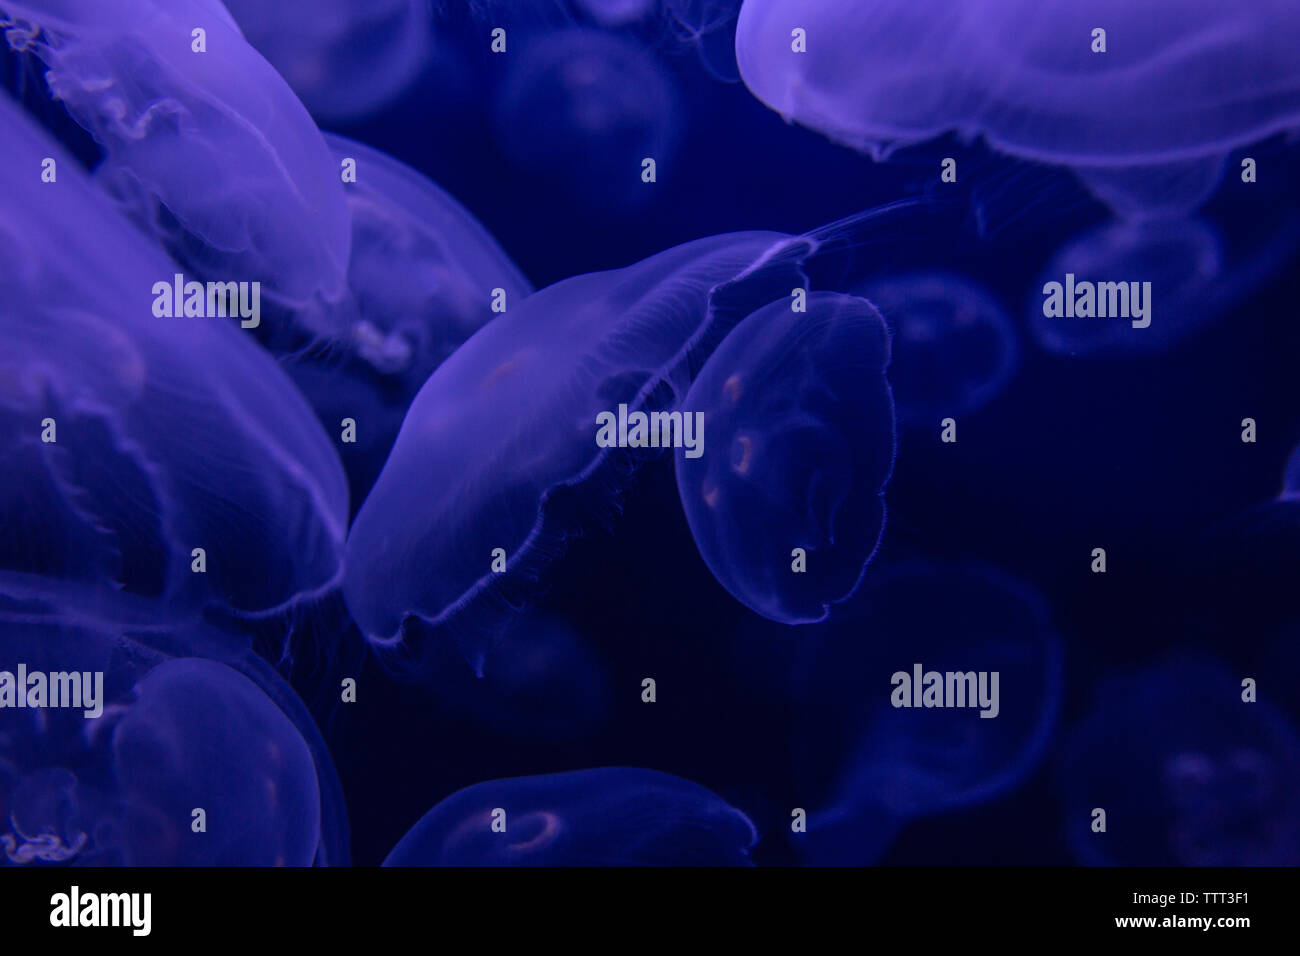 Violet et bleu moon jelly fish ensemble flottant Banque D'Images